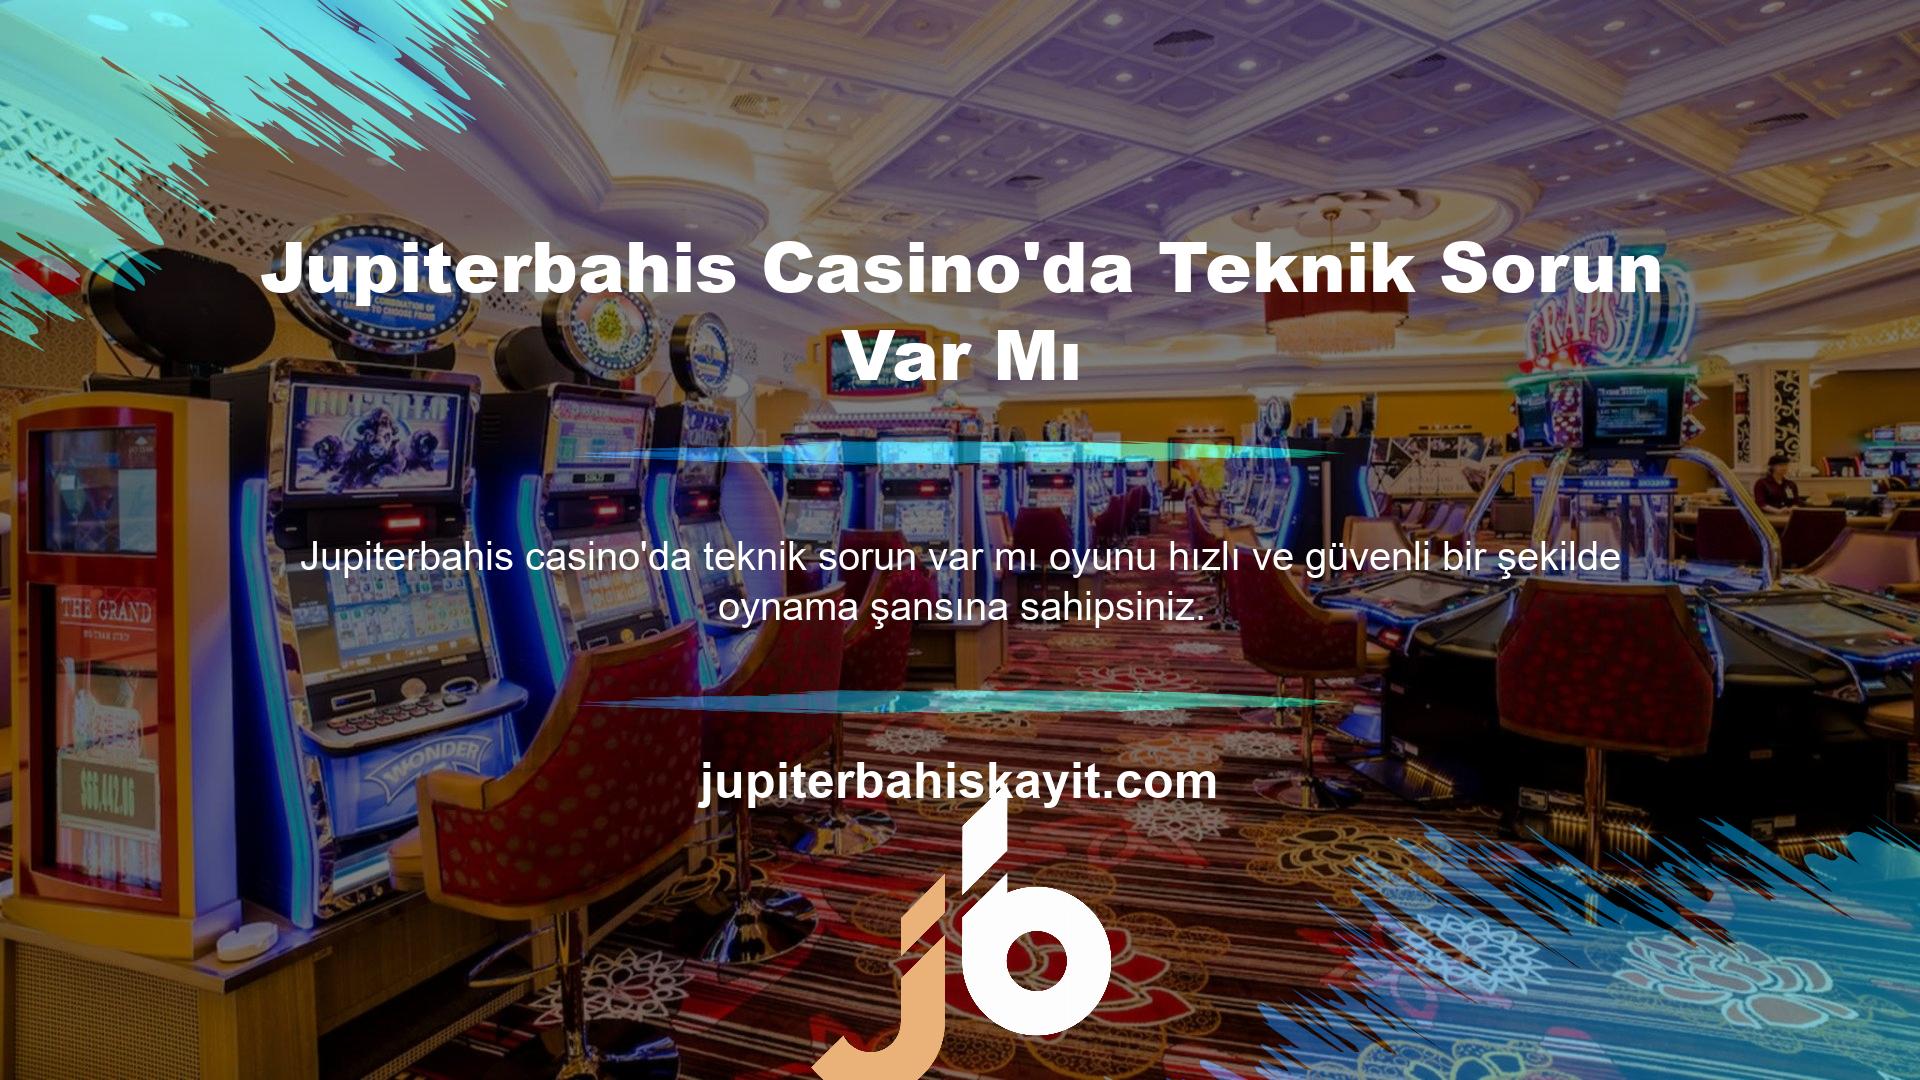 Türkçe seçeneği ile dilediğiniz tarih ve saatte Jupiterbahis casino oyun seçimini keşfedebilir ve hemen kazanmaya başlayabilirsiniz